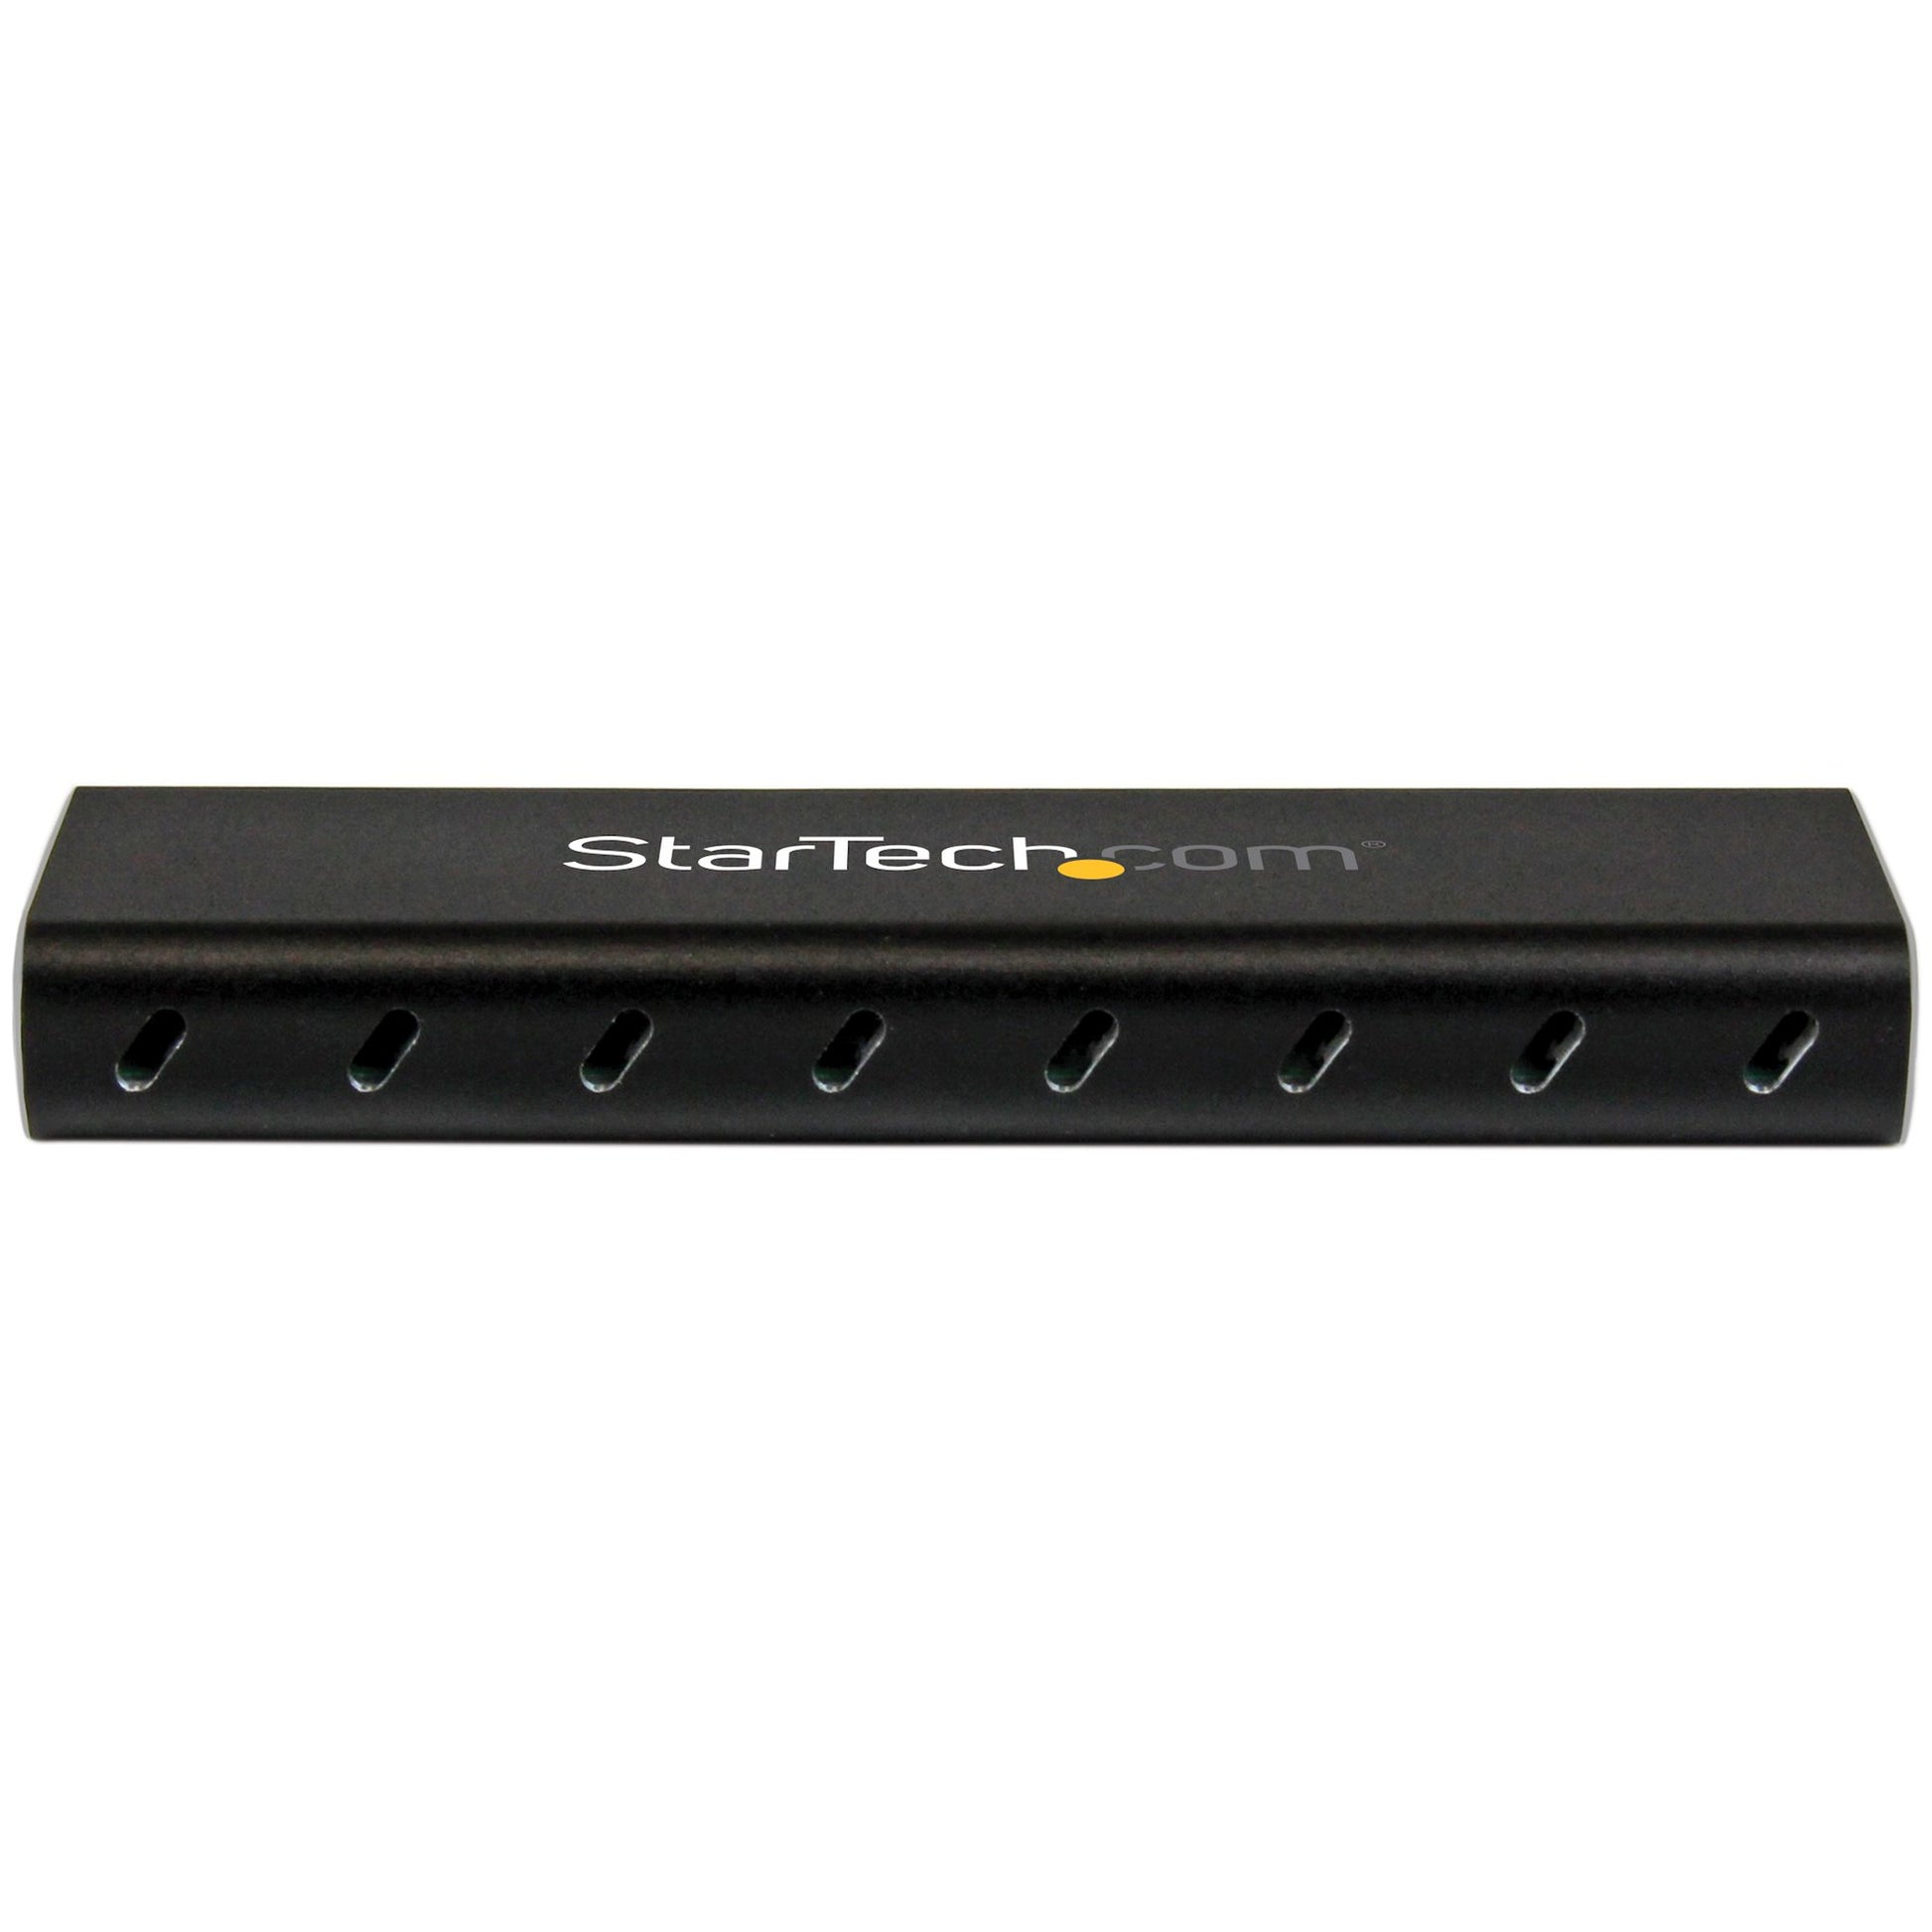 StarTech.com M.2 SSD Enclosure for M.2 SATA SSDs - USB 3.0 (5Gbps) with UASP-4